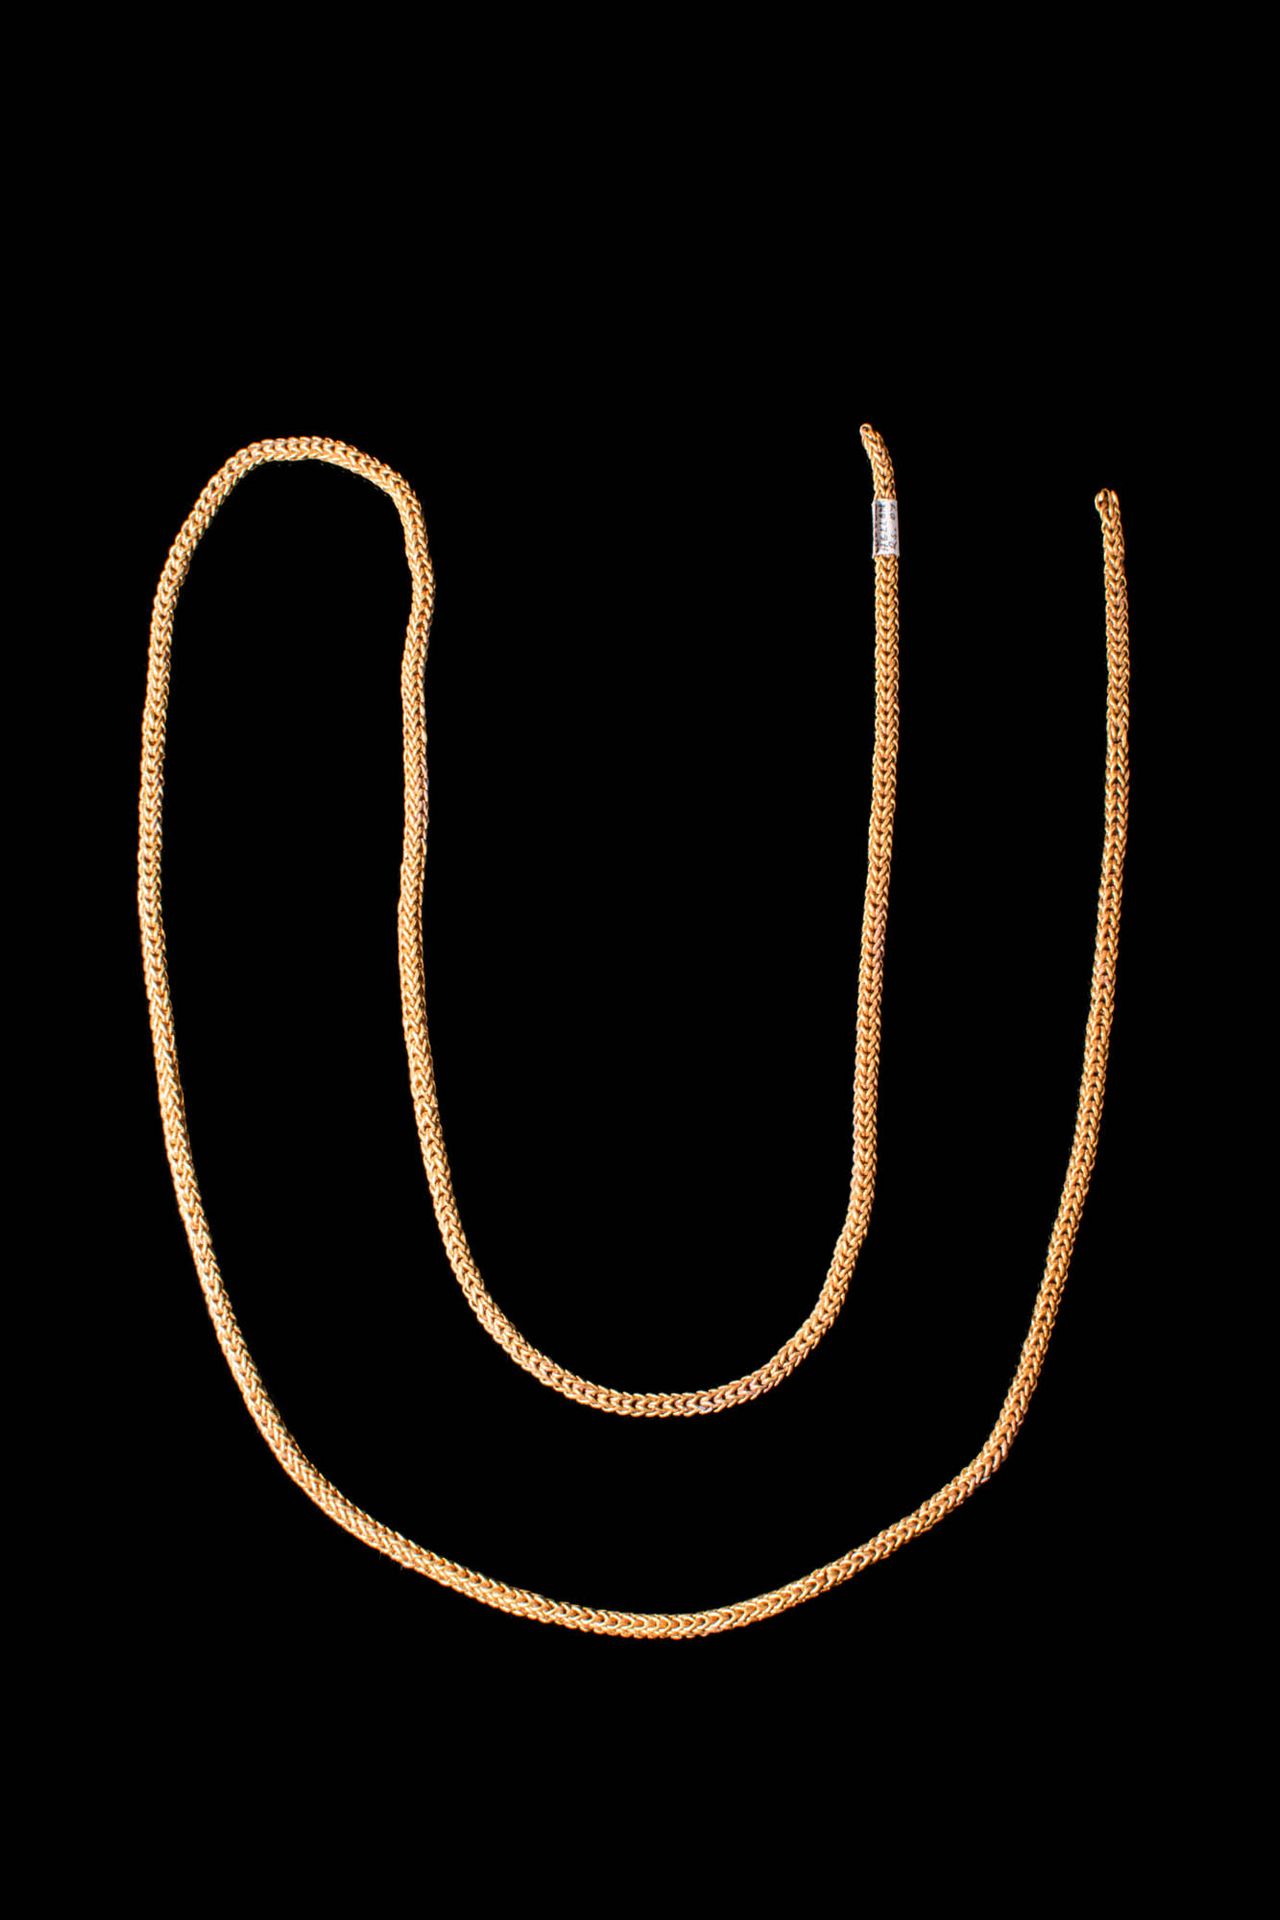 HEAVY HELLENISTIC GOLD CHAIN Ca. 323 - 146 A.C.
Pesado collar helenístico de oro&hellip;